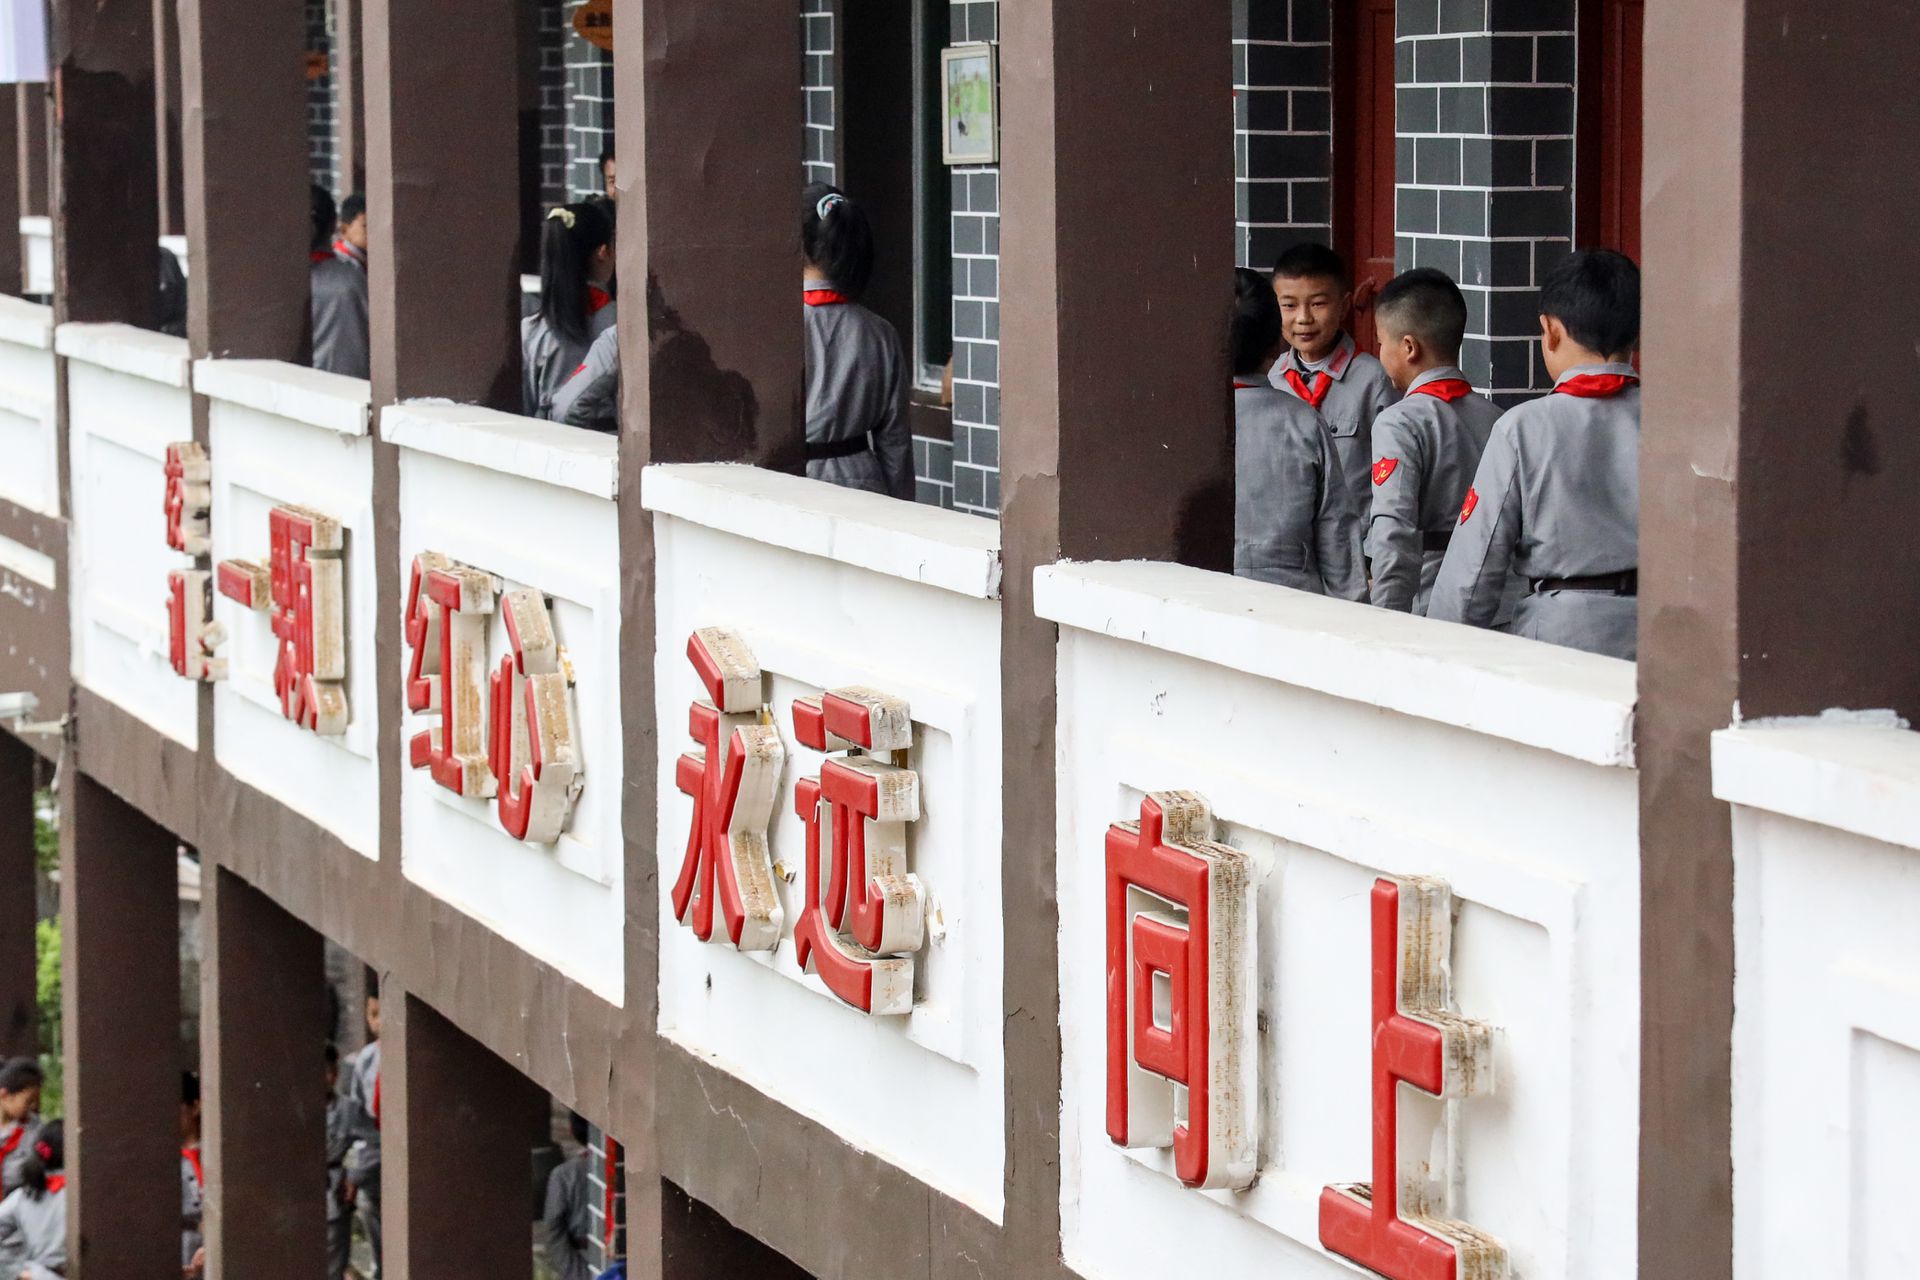 探访中国第一所红军小学 每天穿戴军装红军帽上学